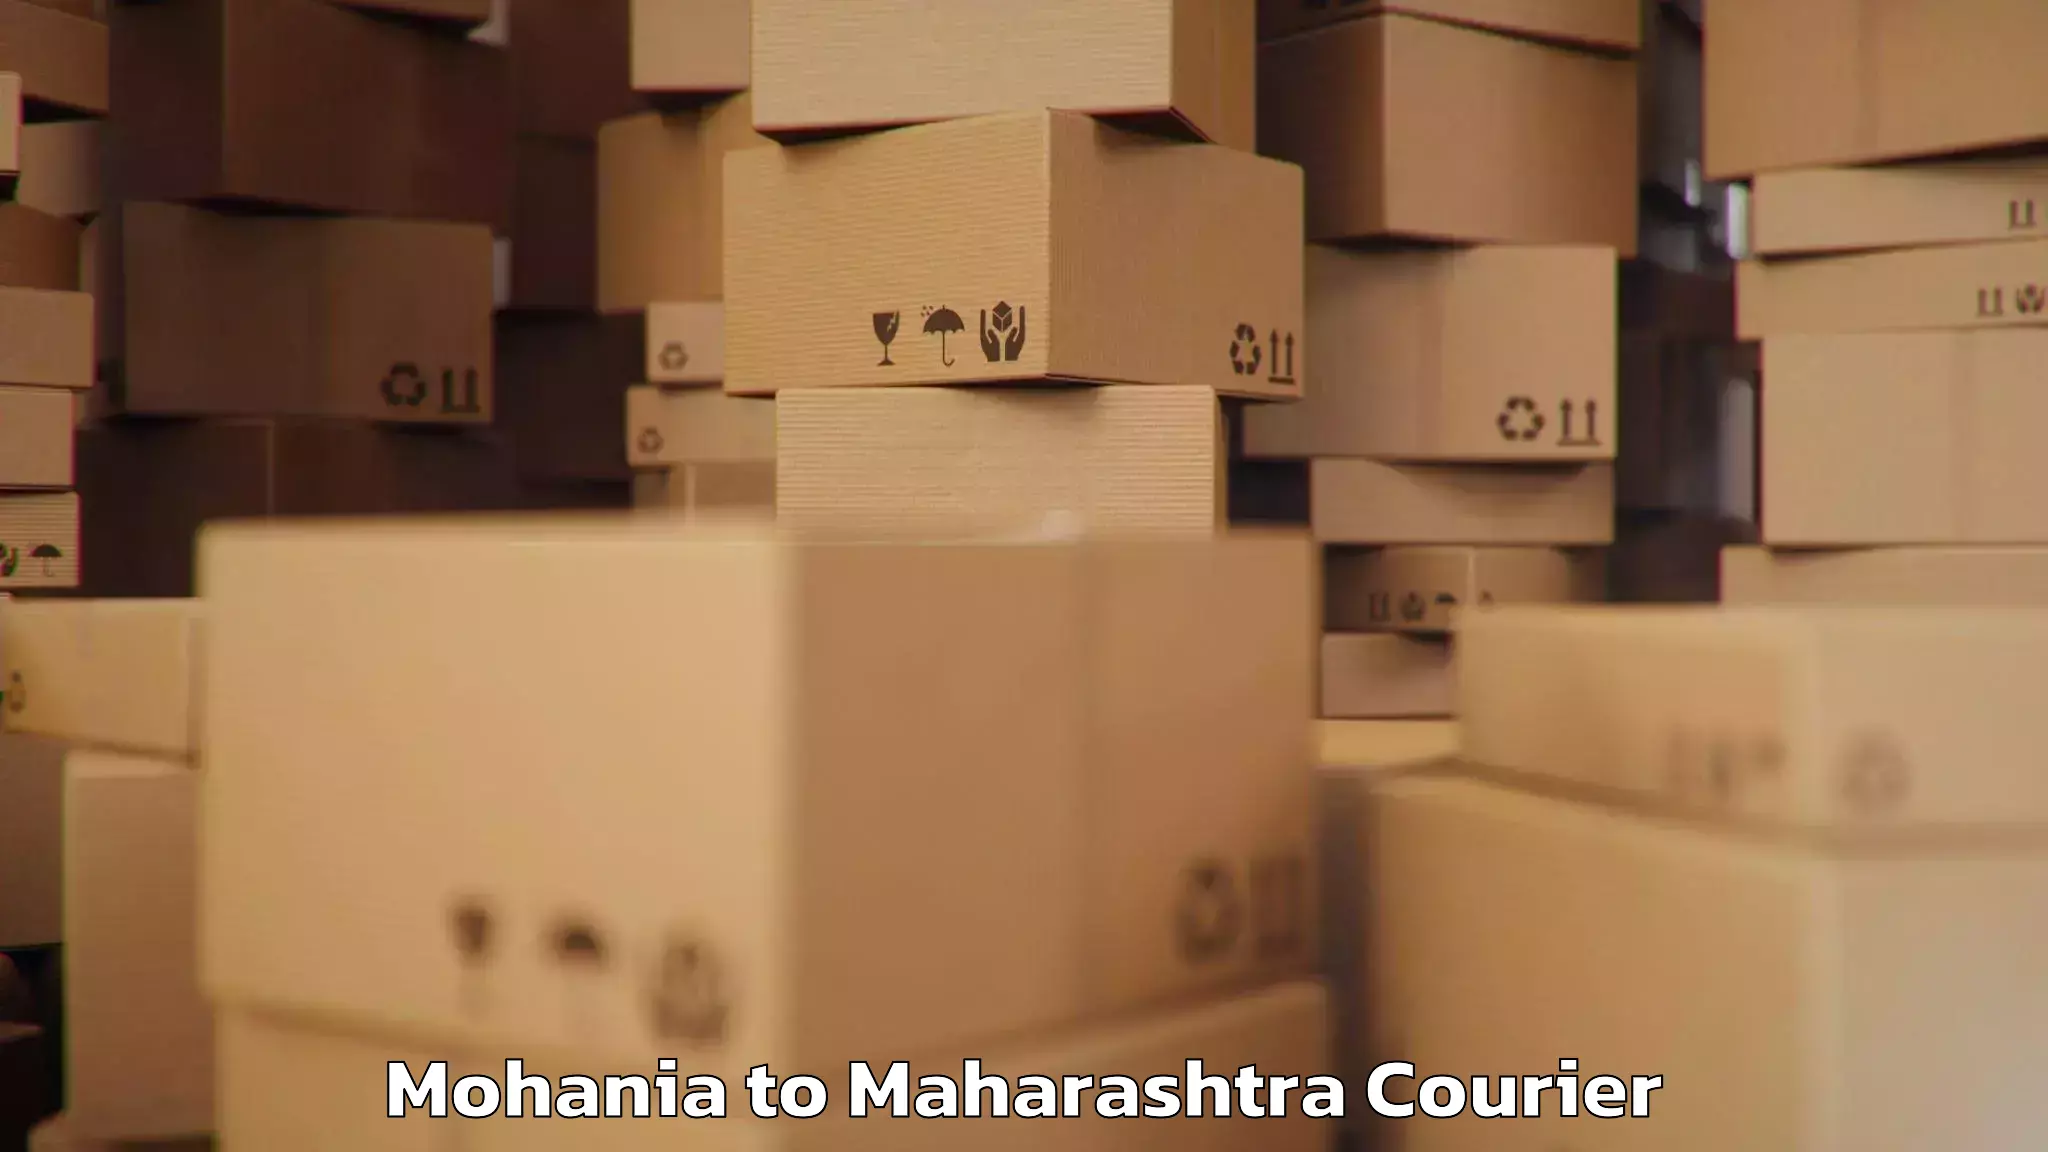 Bulk luggage shipping Mohania to IIIT Pune